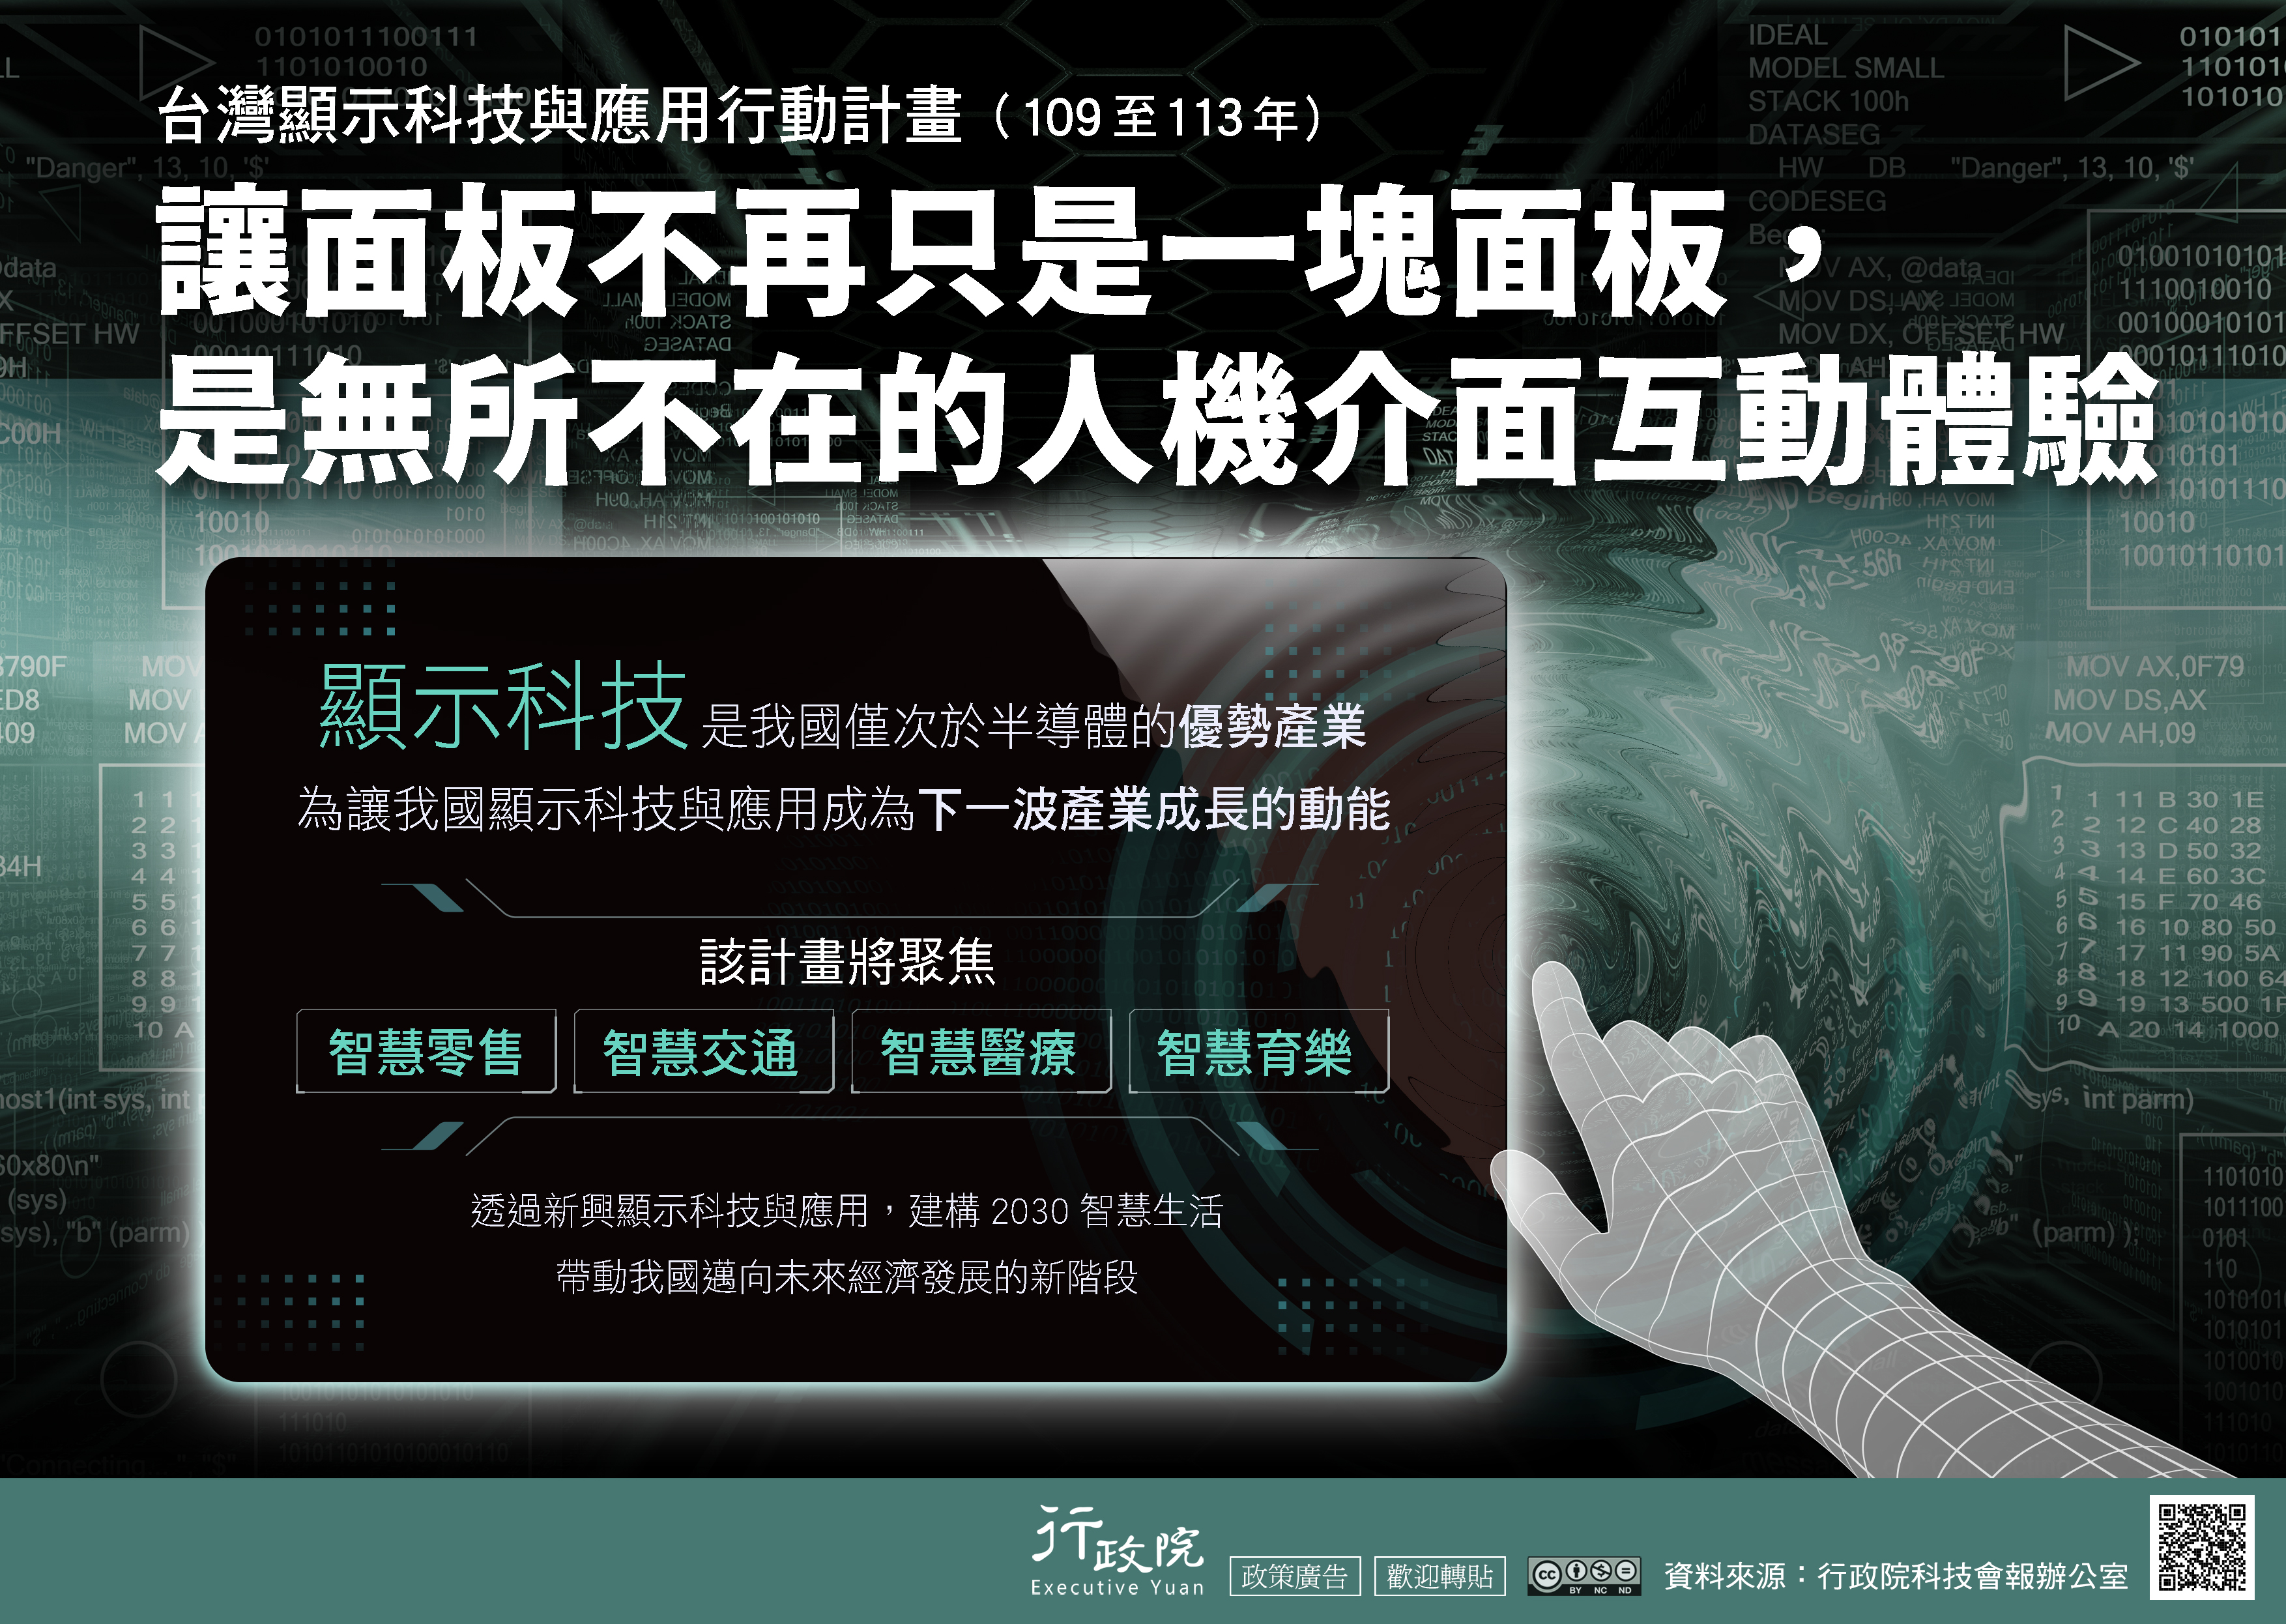 台灣顯示科技與應用行動計畫